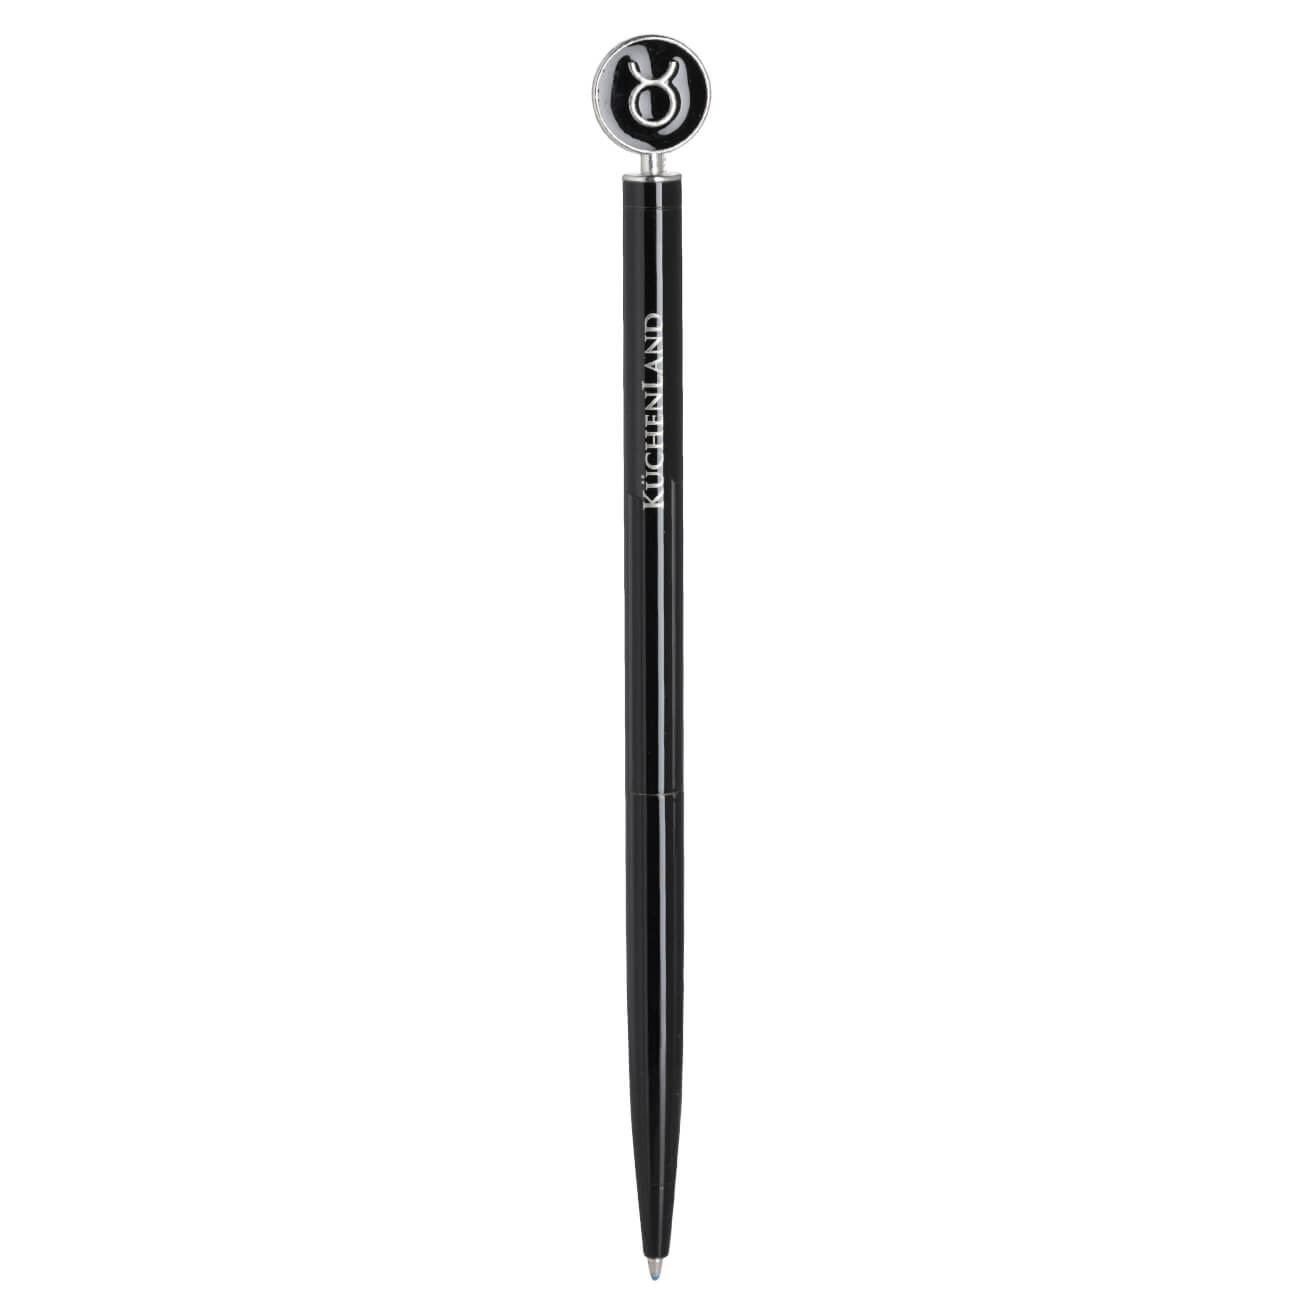 Ручка шариковая, 15 см, с фигуркой, сталь, черно-серебристая, Телец, Zodiac ручка шариковая brauberg